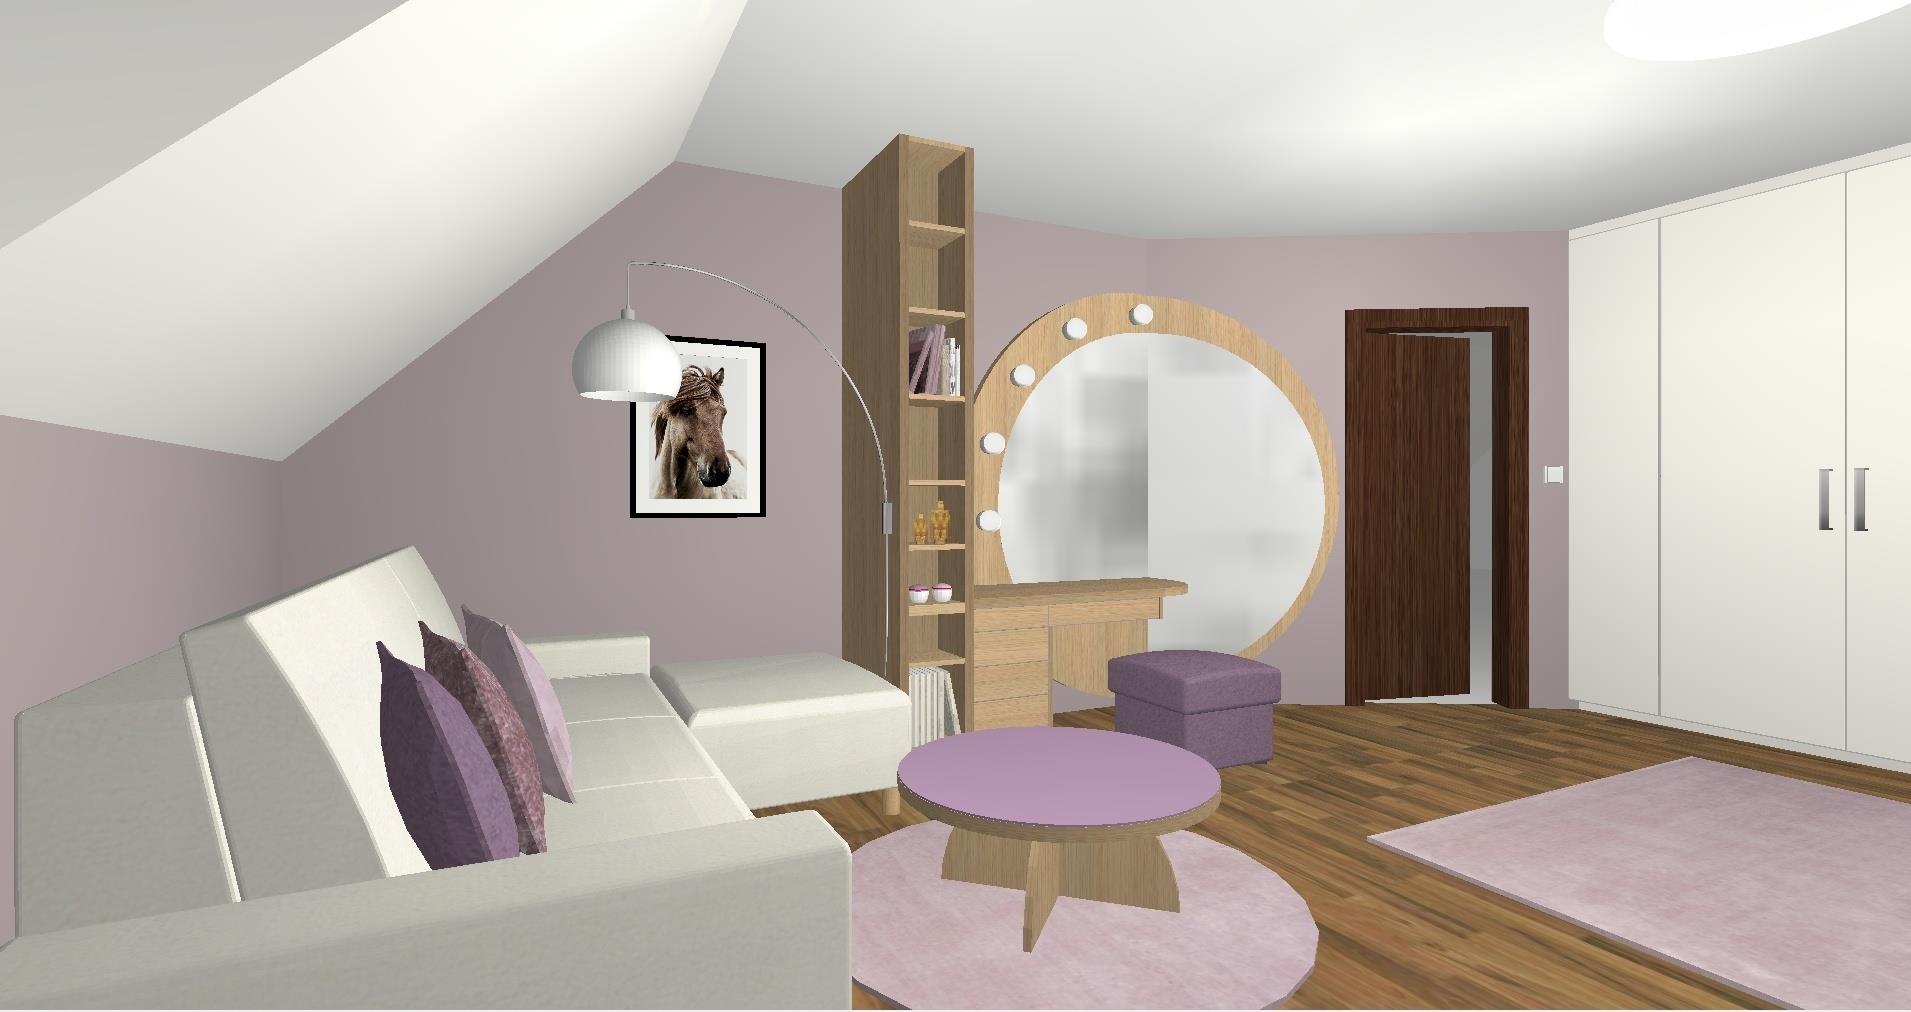 Rodinný dům Horní Bezděkov Úzká II – 3D návrh  Dívčího pokoje